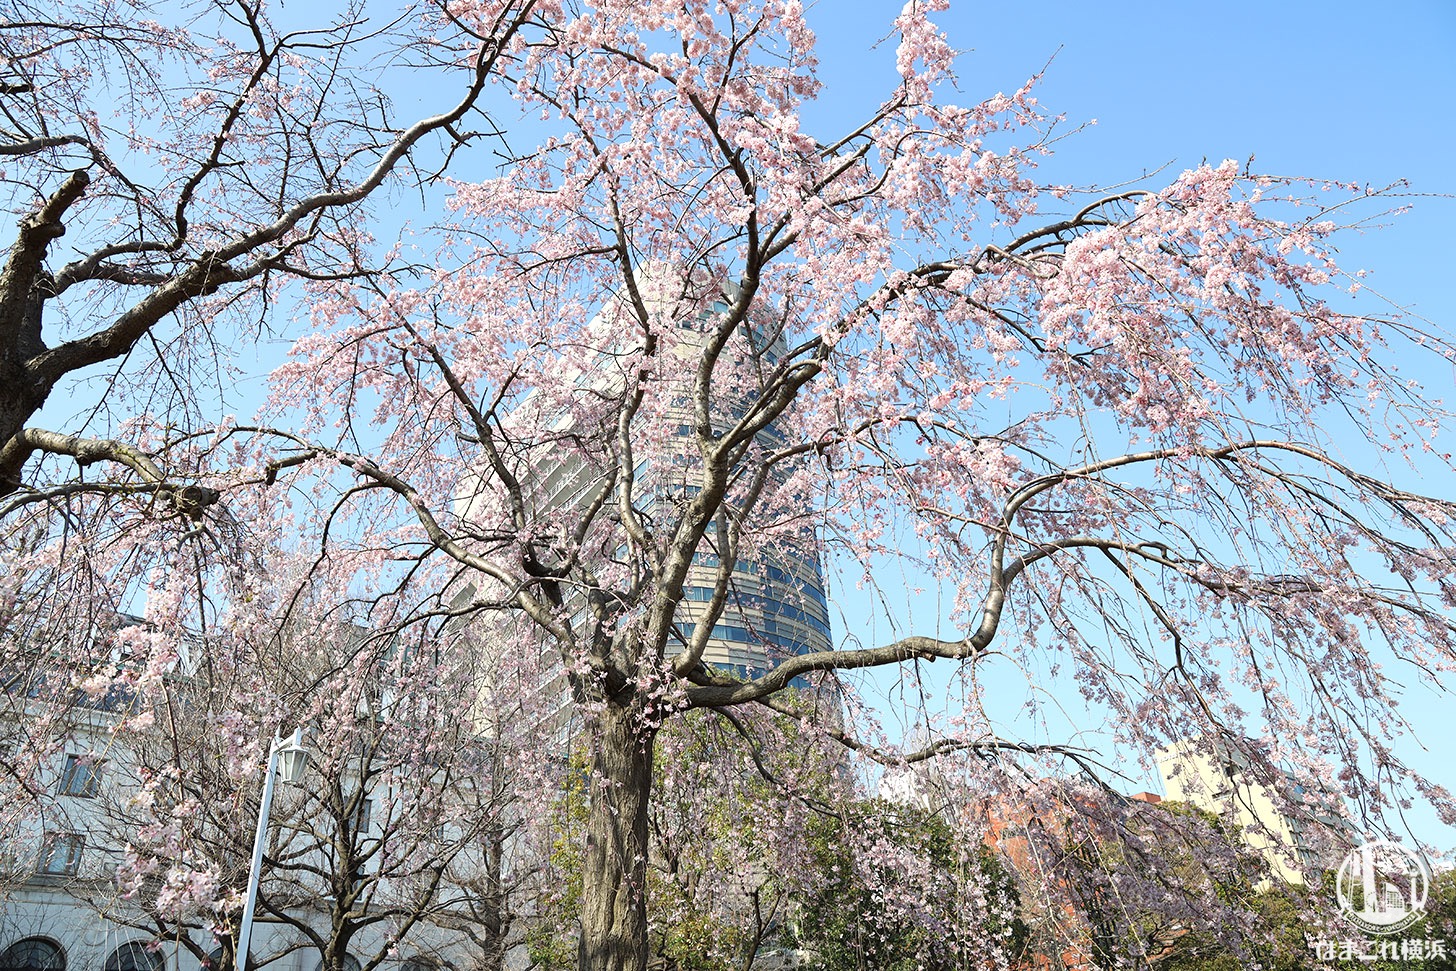 2020年 山下公園の枝垂れ桜がまもなく見頃！降り注ぐように咲く桜で春感じる